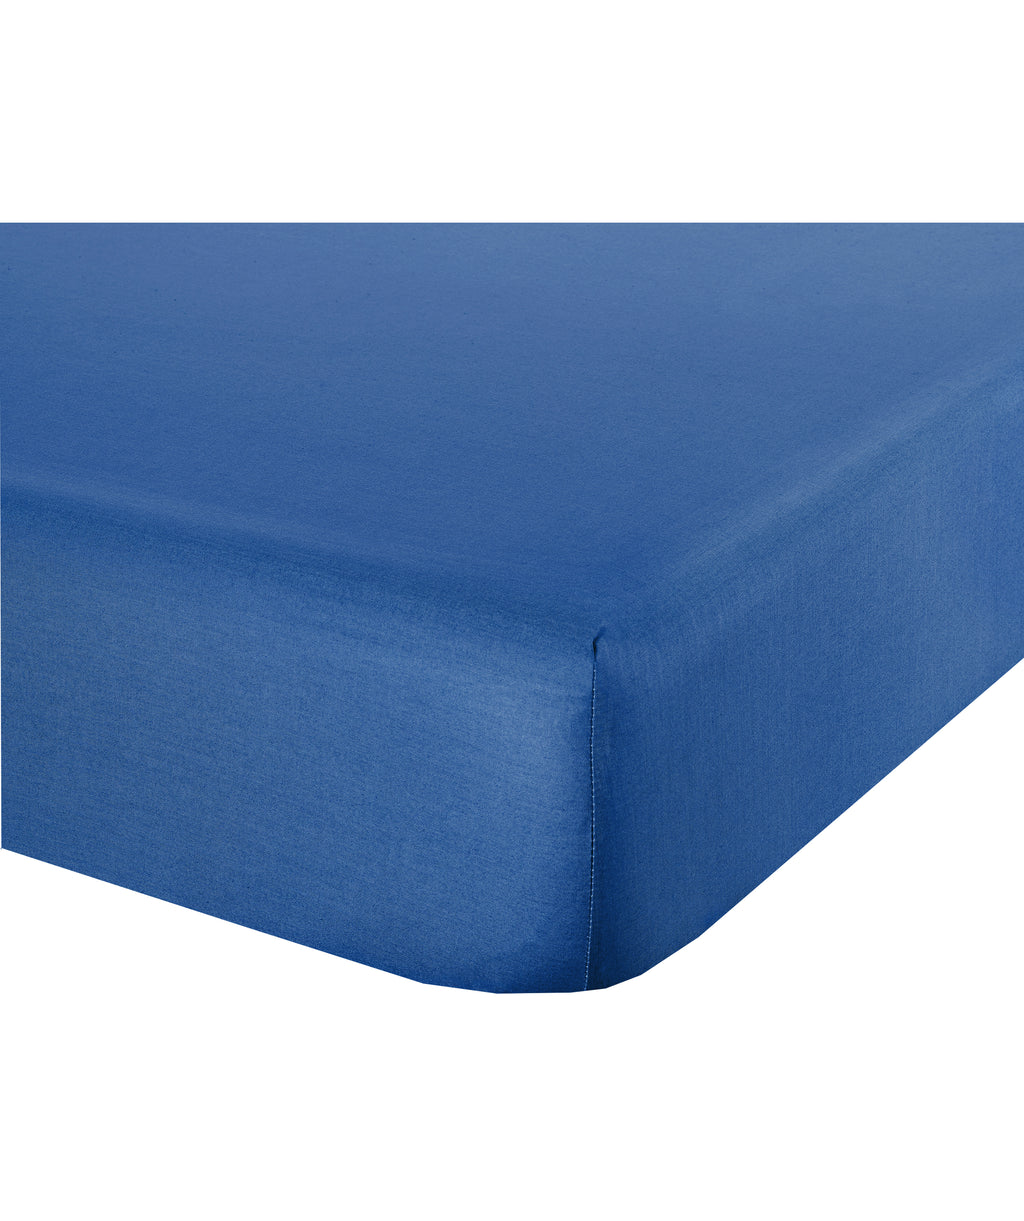 Lenzuolo letto sotto lenzuola con angoli in cotone made in italy BLUETTE - NOVILUNIO.IT